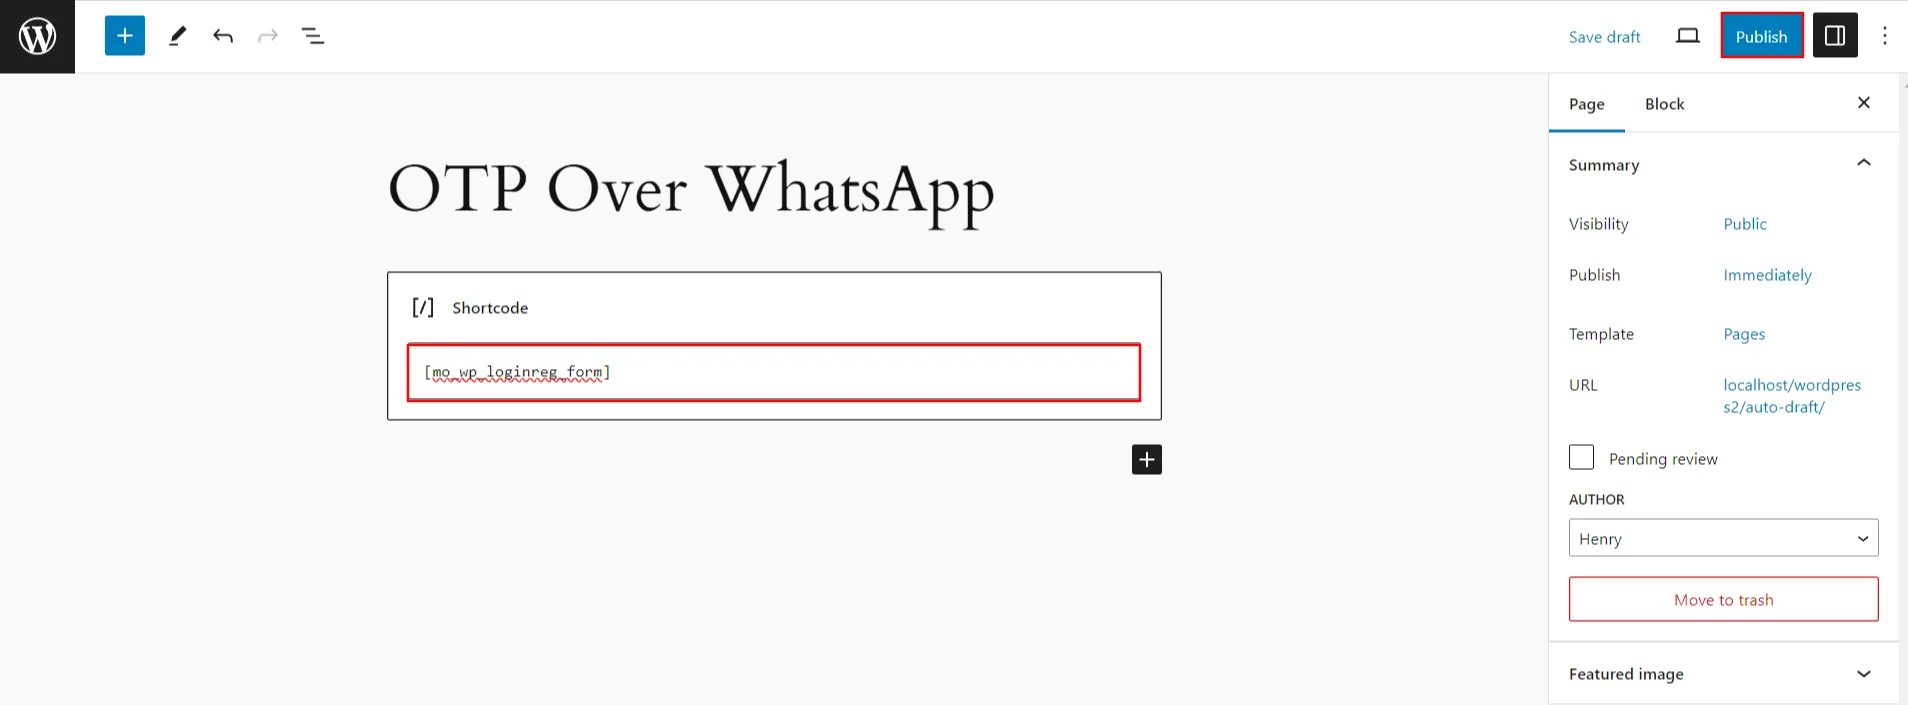 WhatsApp-Anmeldung mit OTP – Klicken Sie auf die Schaltfläche „Veröffentlichen“.